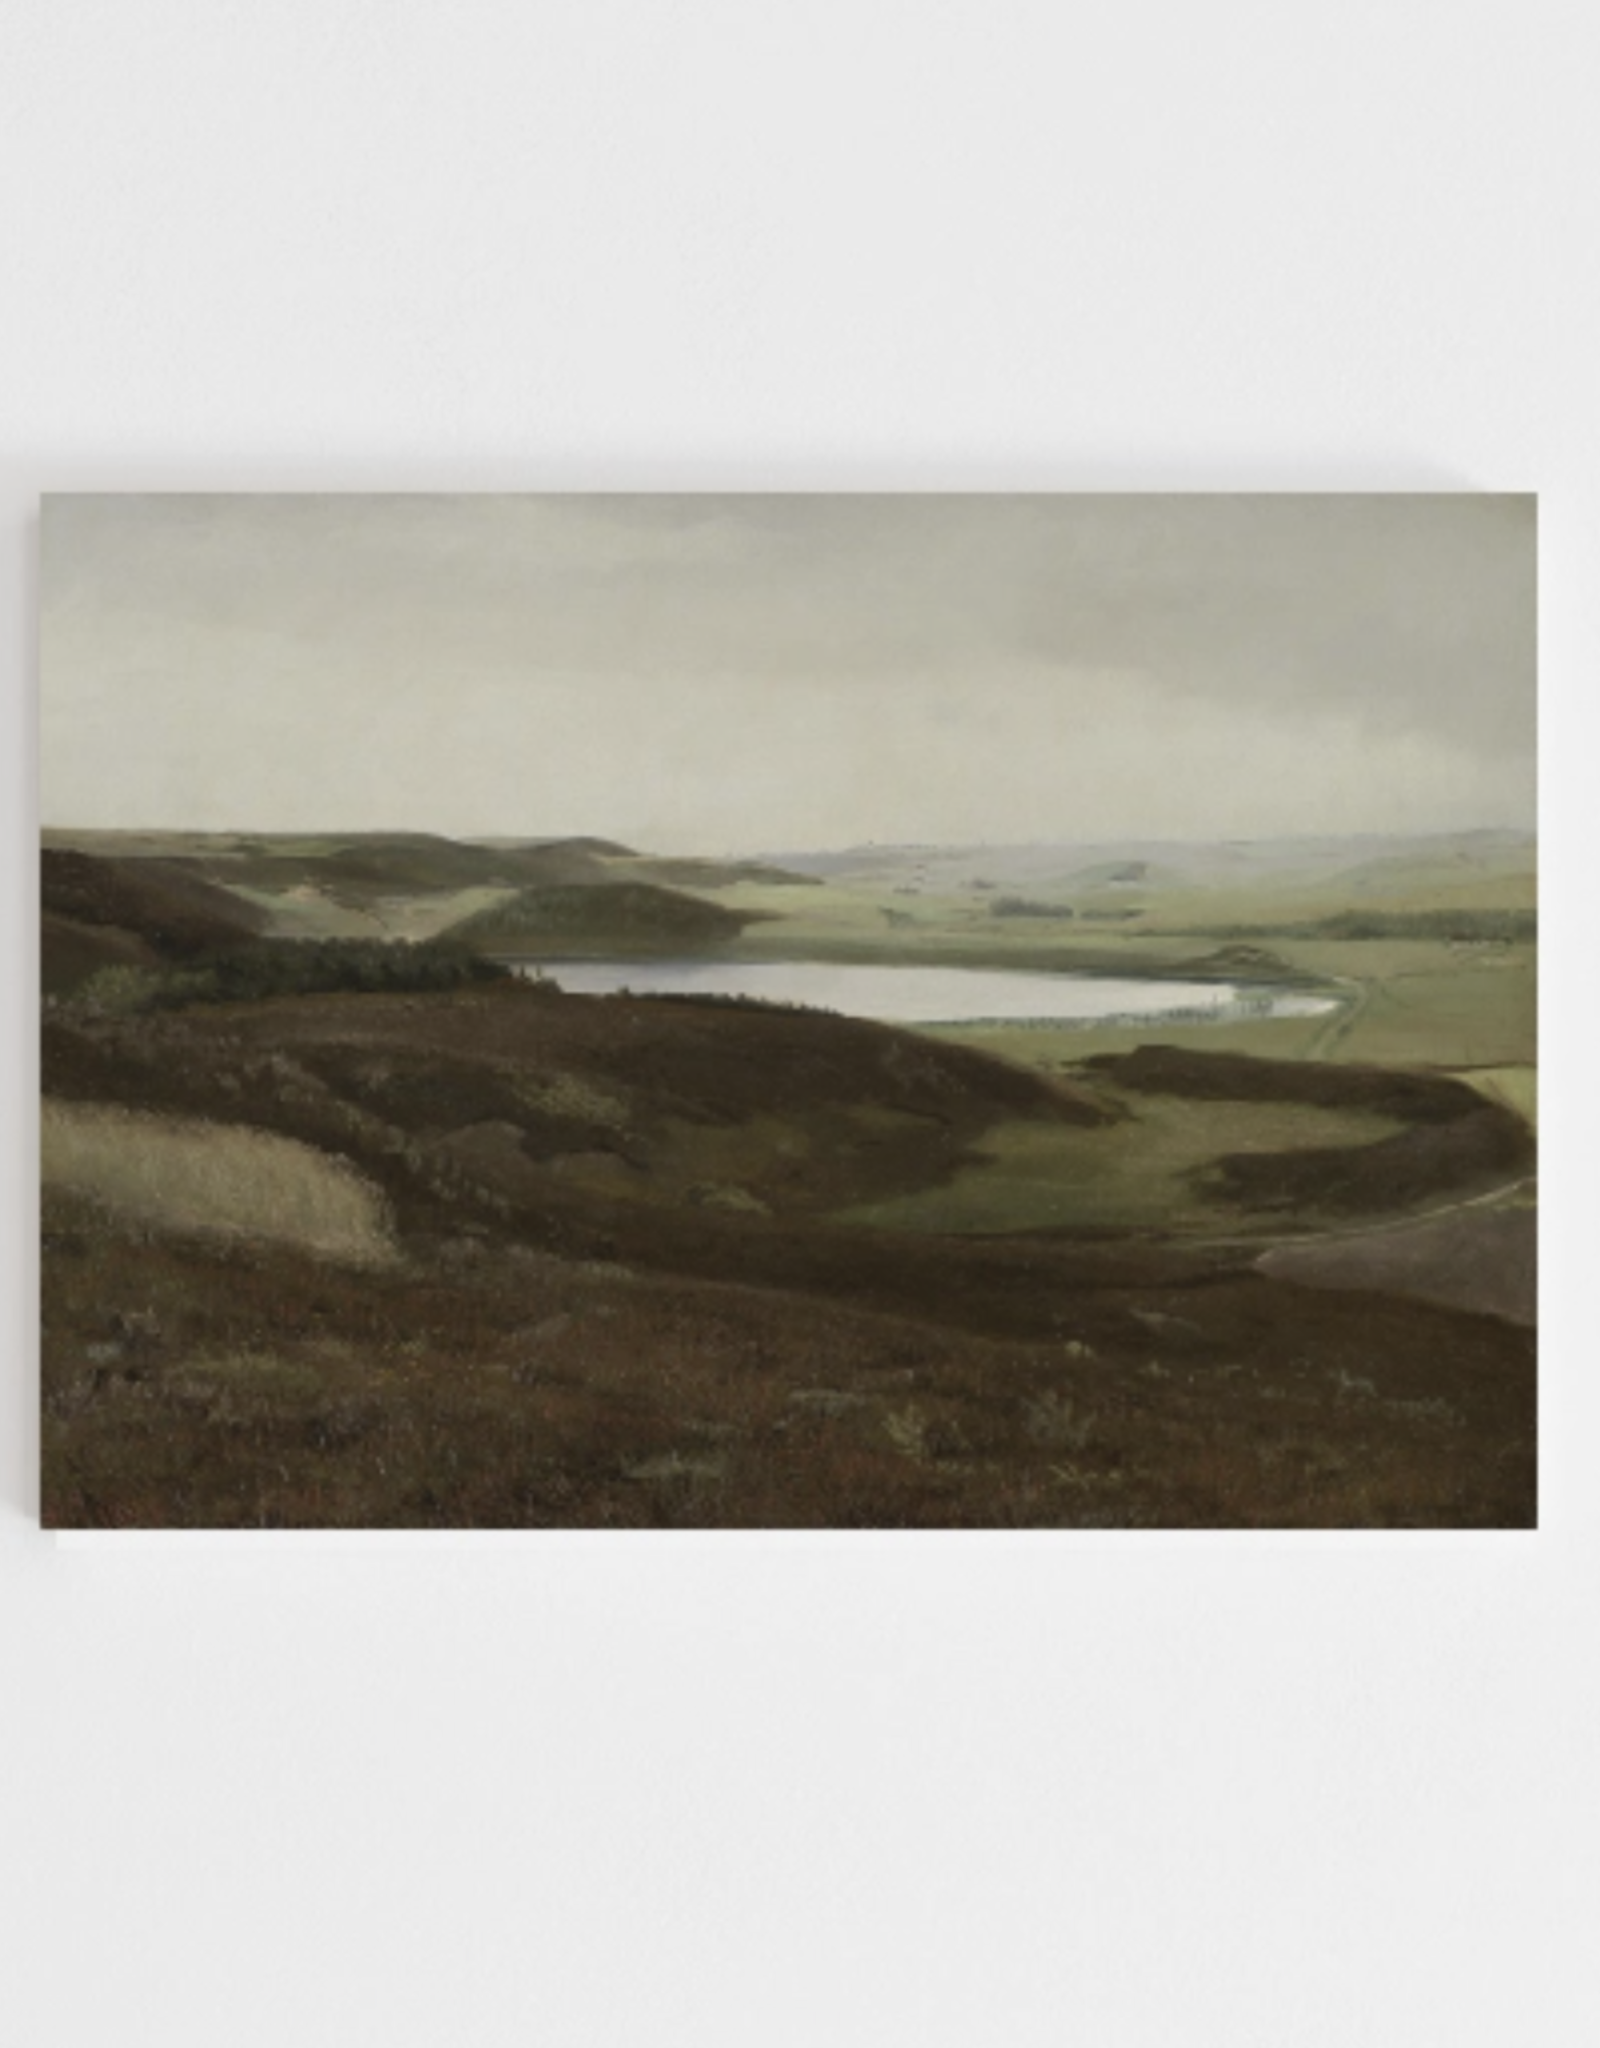 Framed Vintage Landscape Print | 8x10